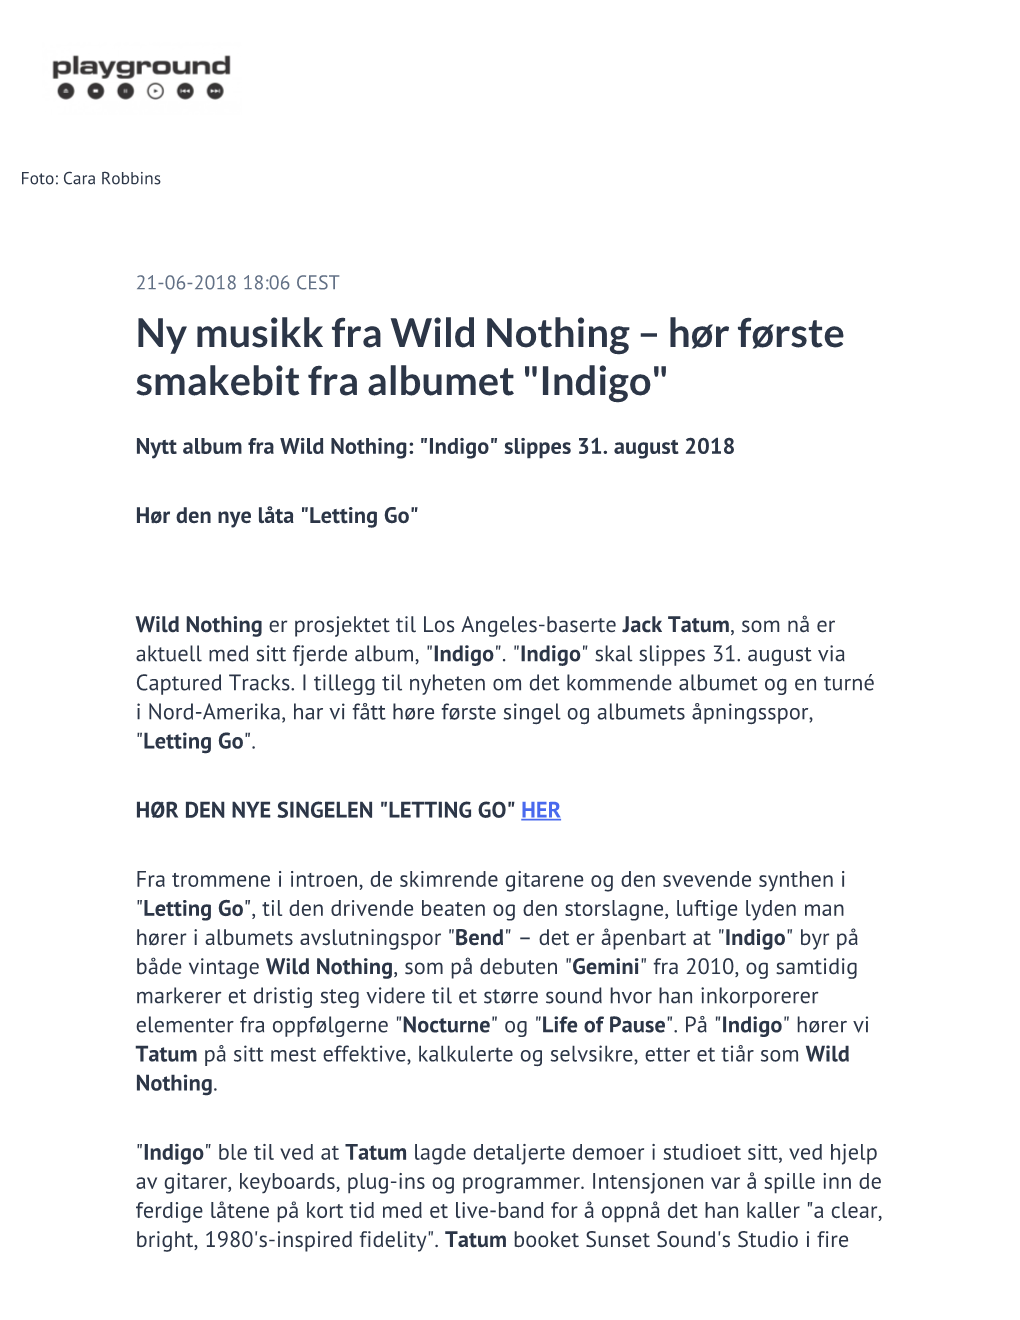 Ny Musikk Fra Wild Nothing – Hør Første Smakebit Fra Albumet "Indigo"